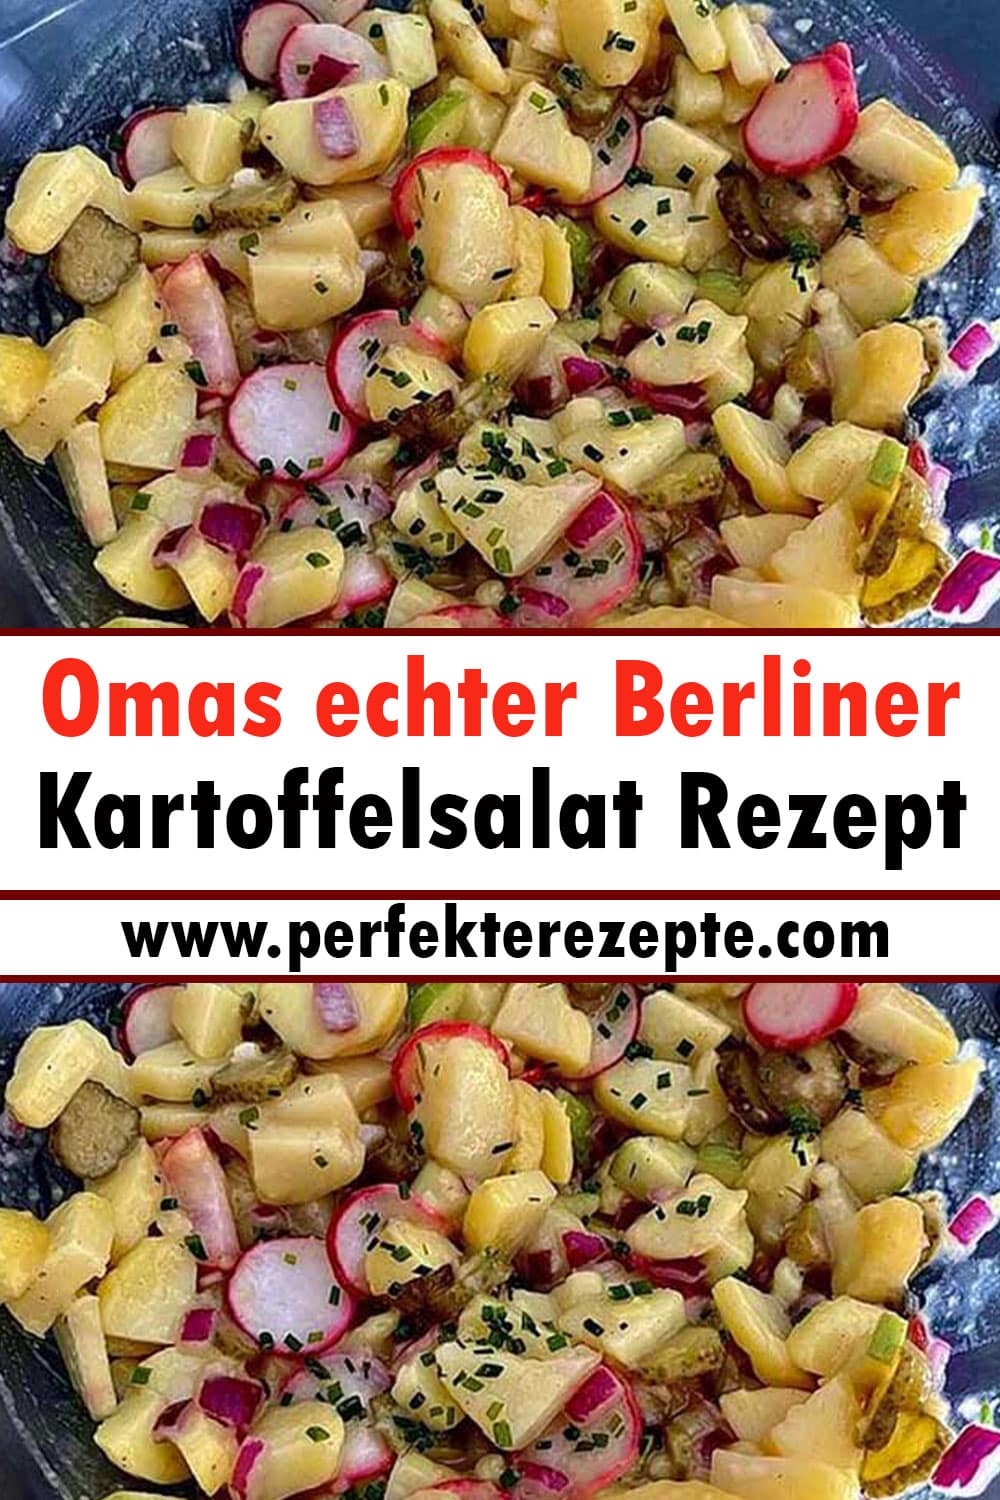 Omas echter Berliner Kartoffelsalat Rezept